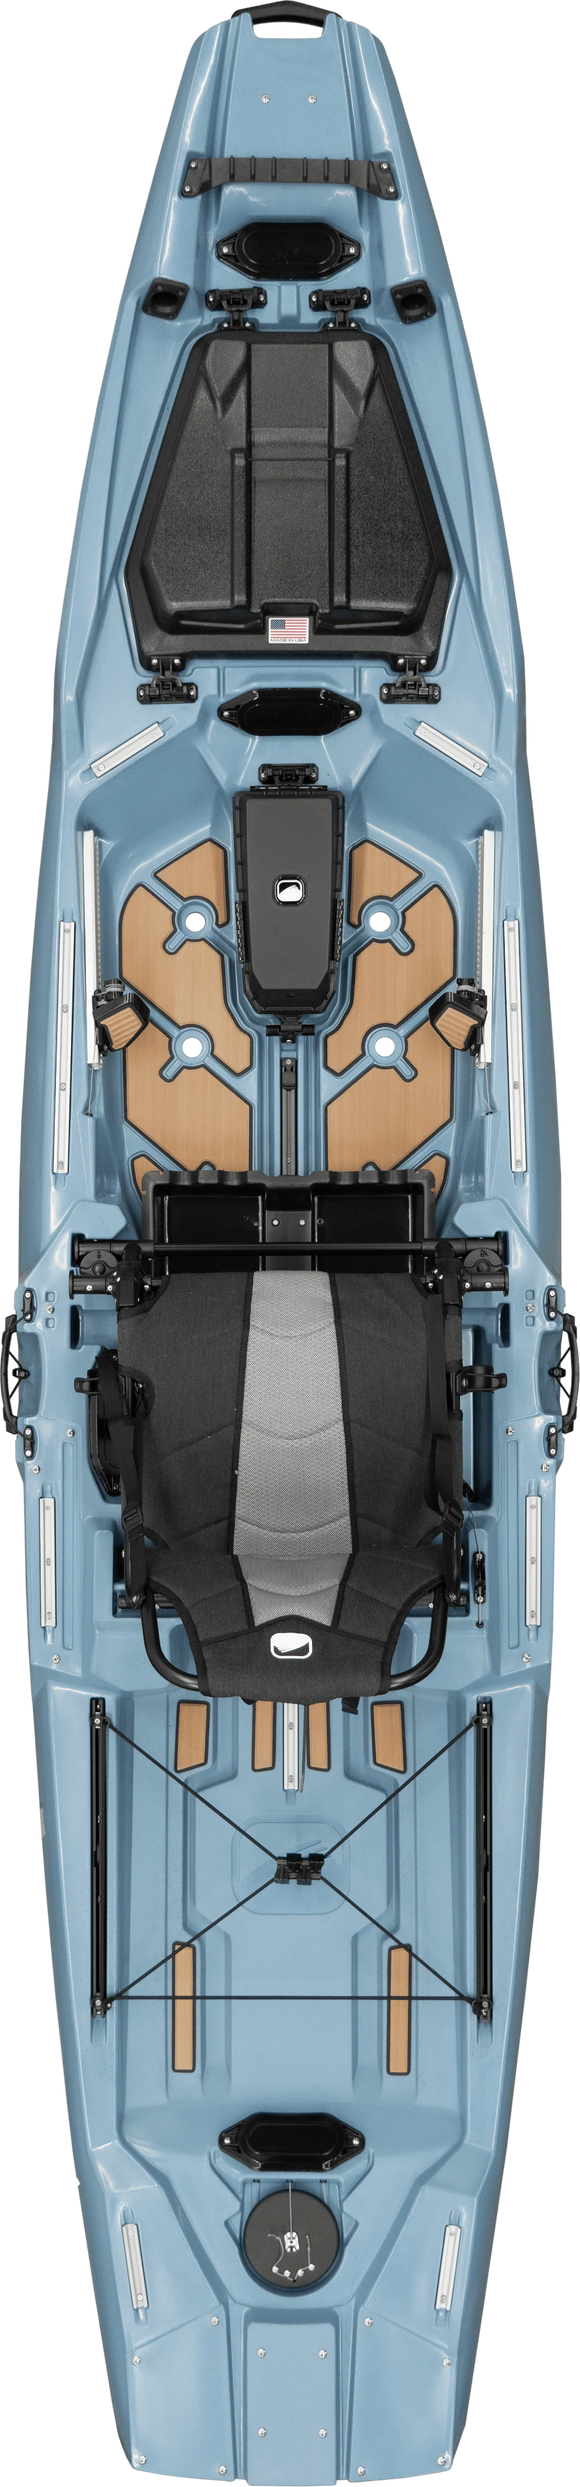 FeelFree Gravity Kayak Seat With High Backrest Kayaking Fishing